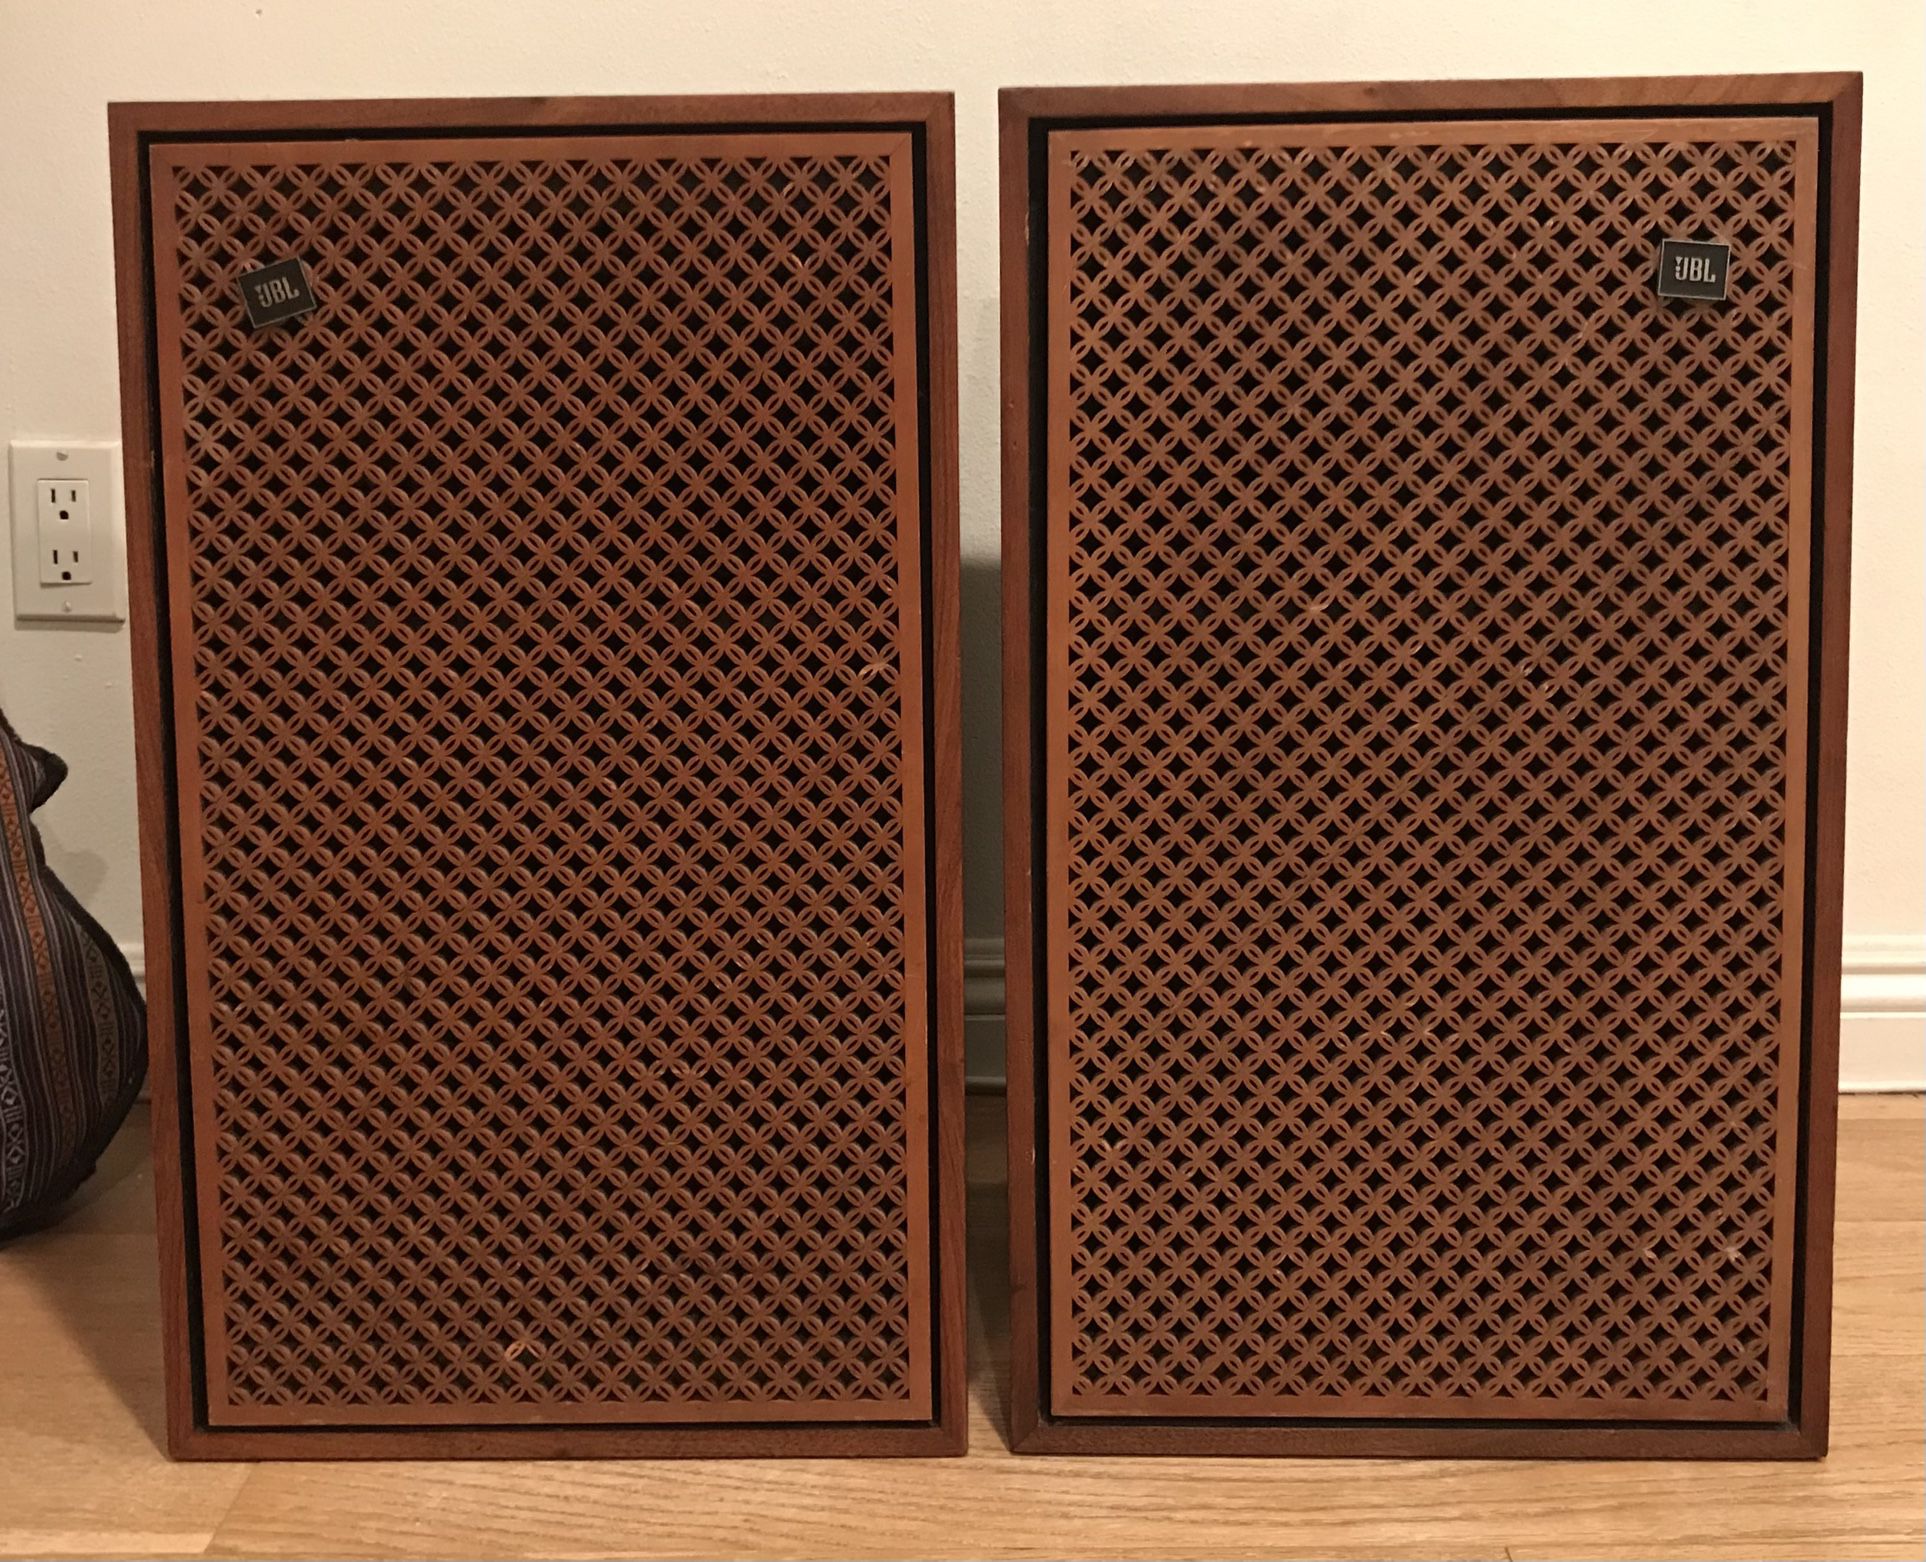 Jbl Lancer 99 Vintage Speakers. Woofer Re-foam & Crossover Recapped.